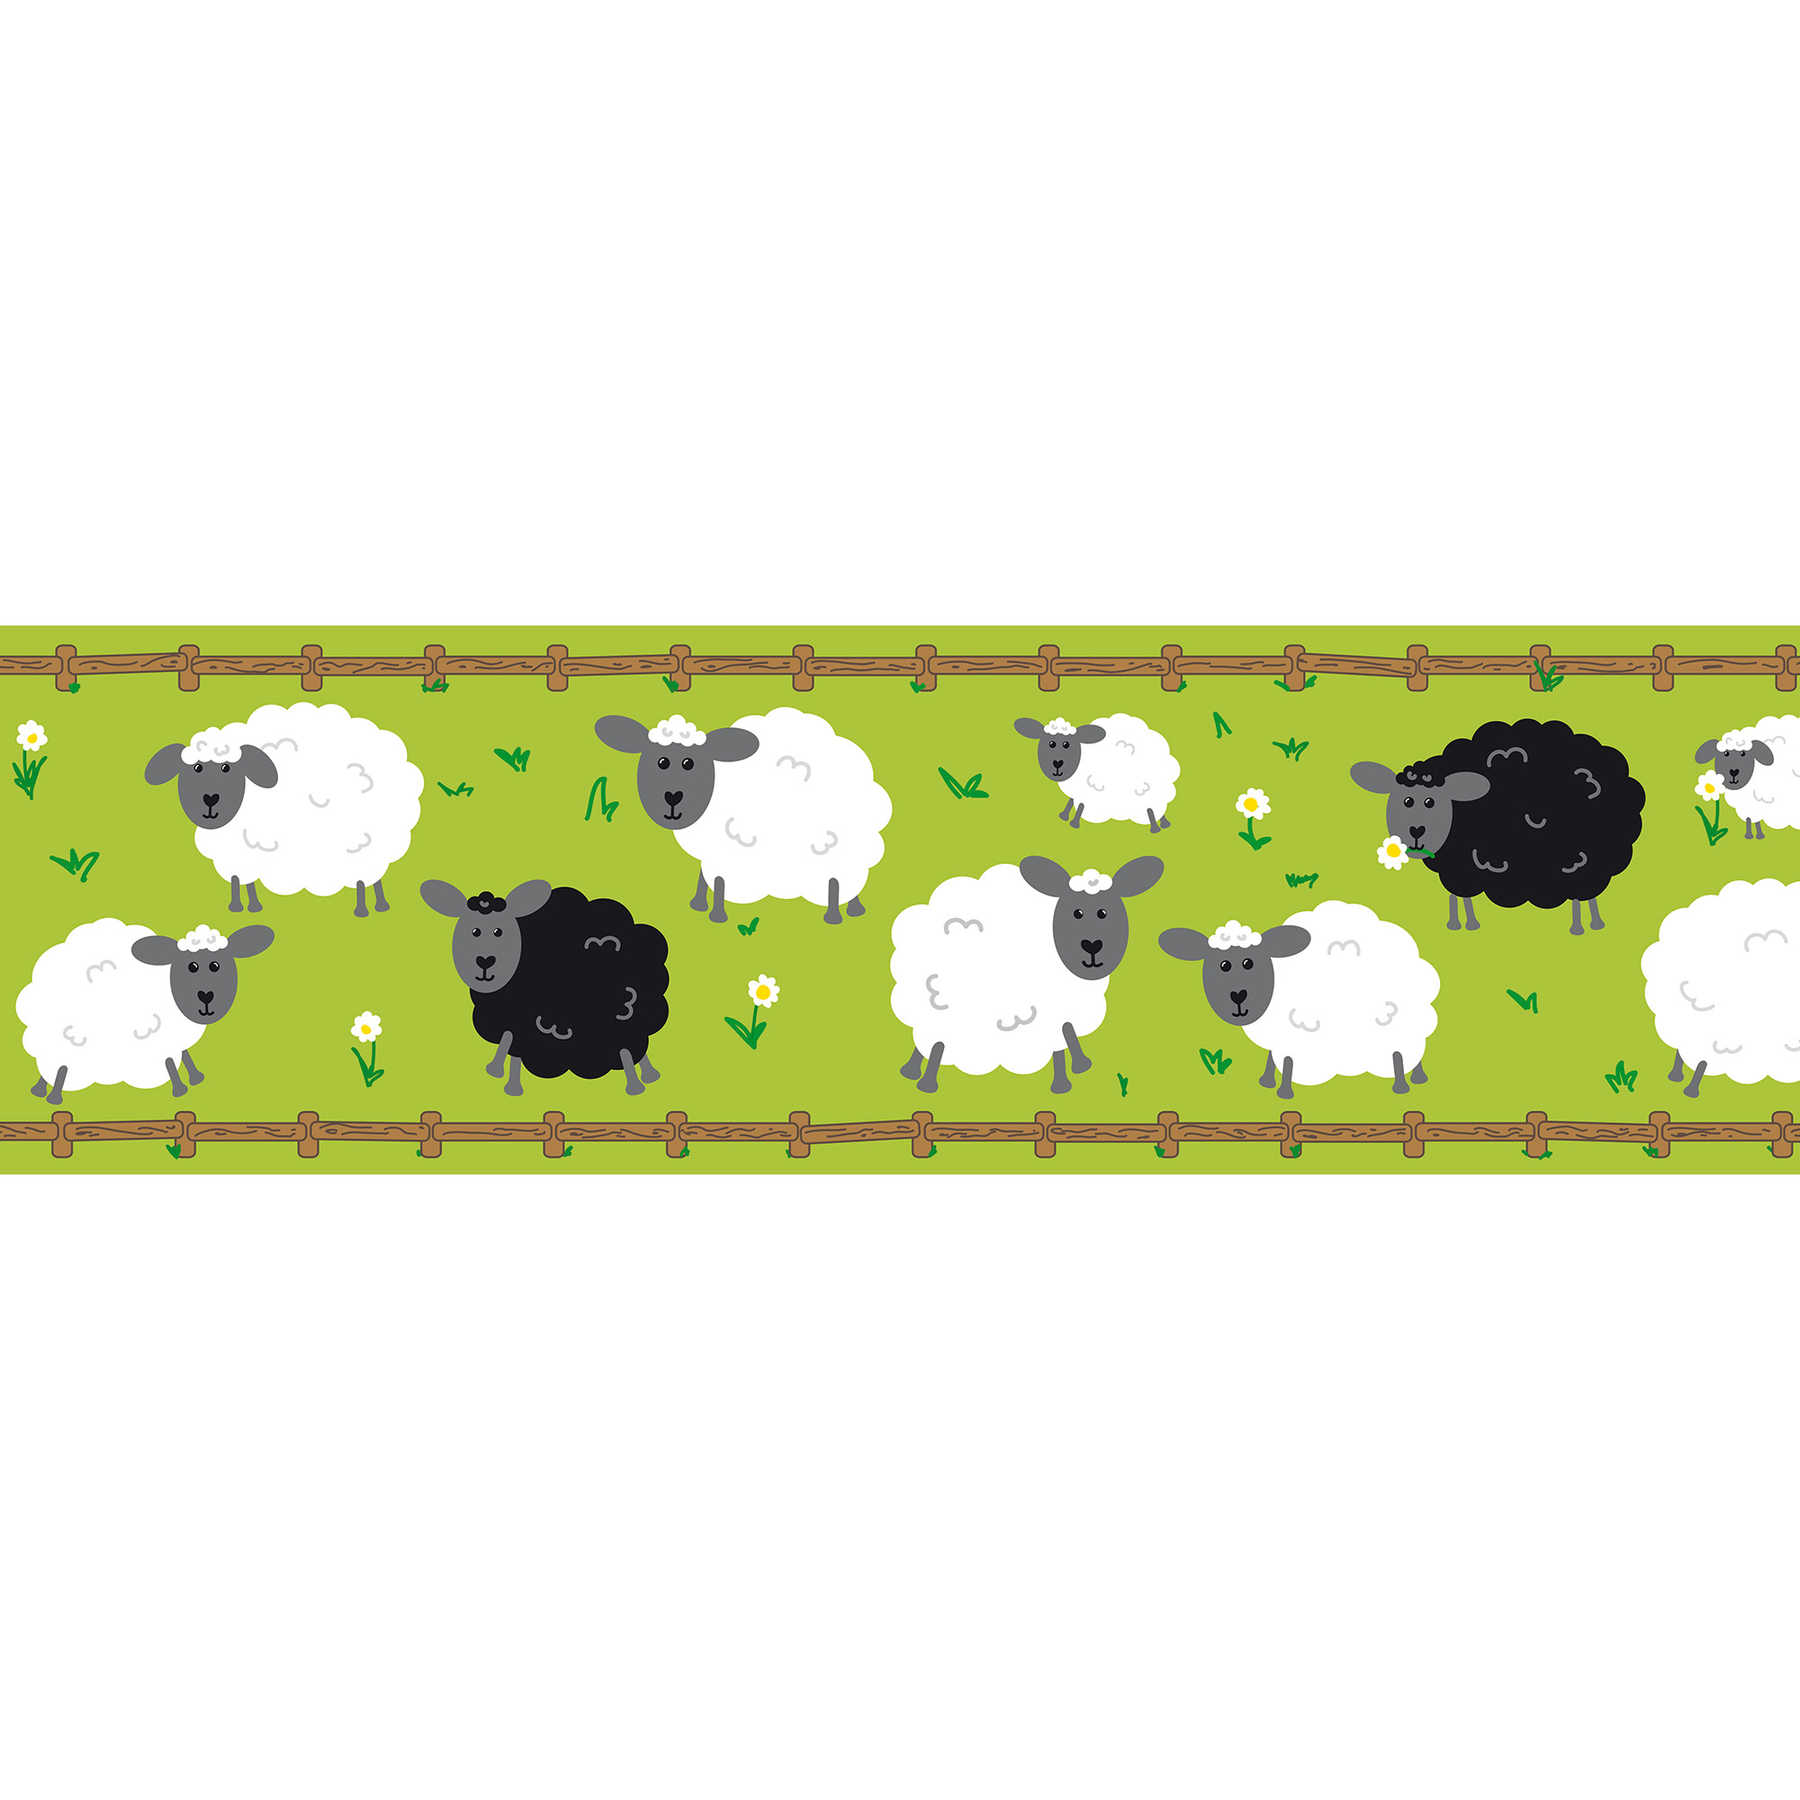 Bordure autocollante "Petit mouton dans le pré" - Vert, blanc, noir
